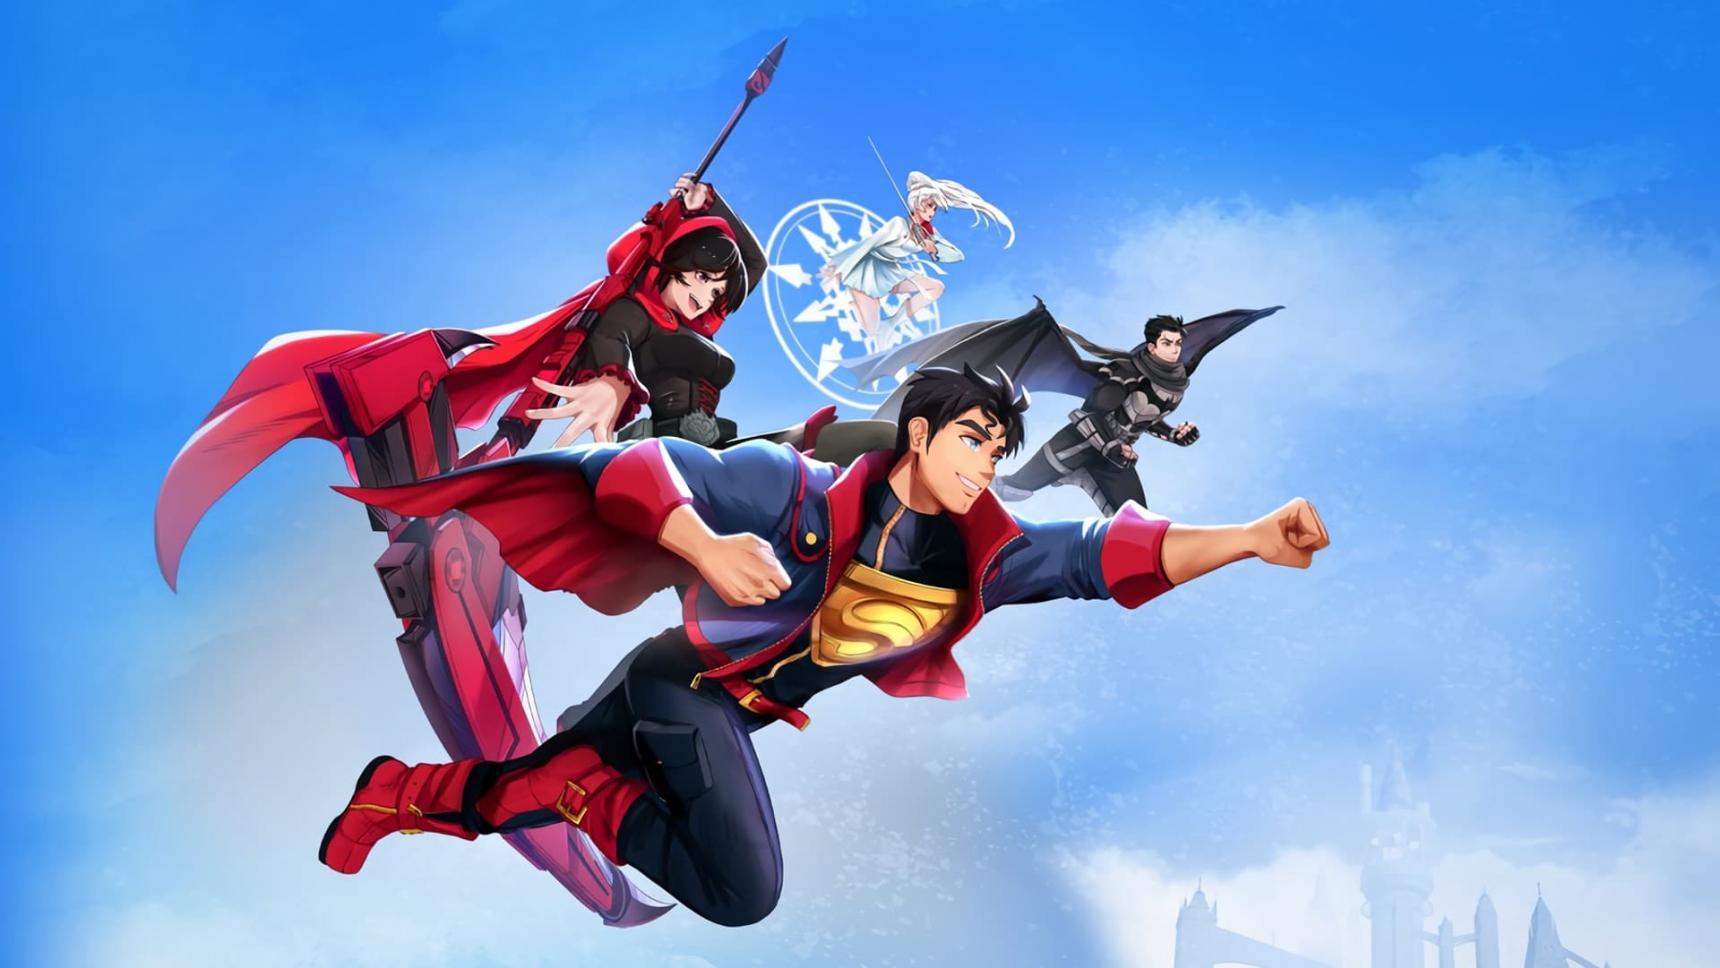 poster de Liga de la Justicia x RWBY: Superhéroes y Cazadores: Parte 1